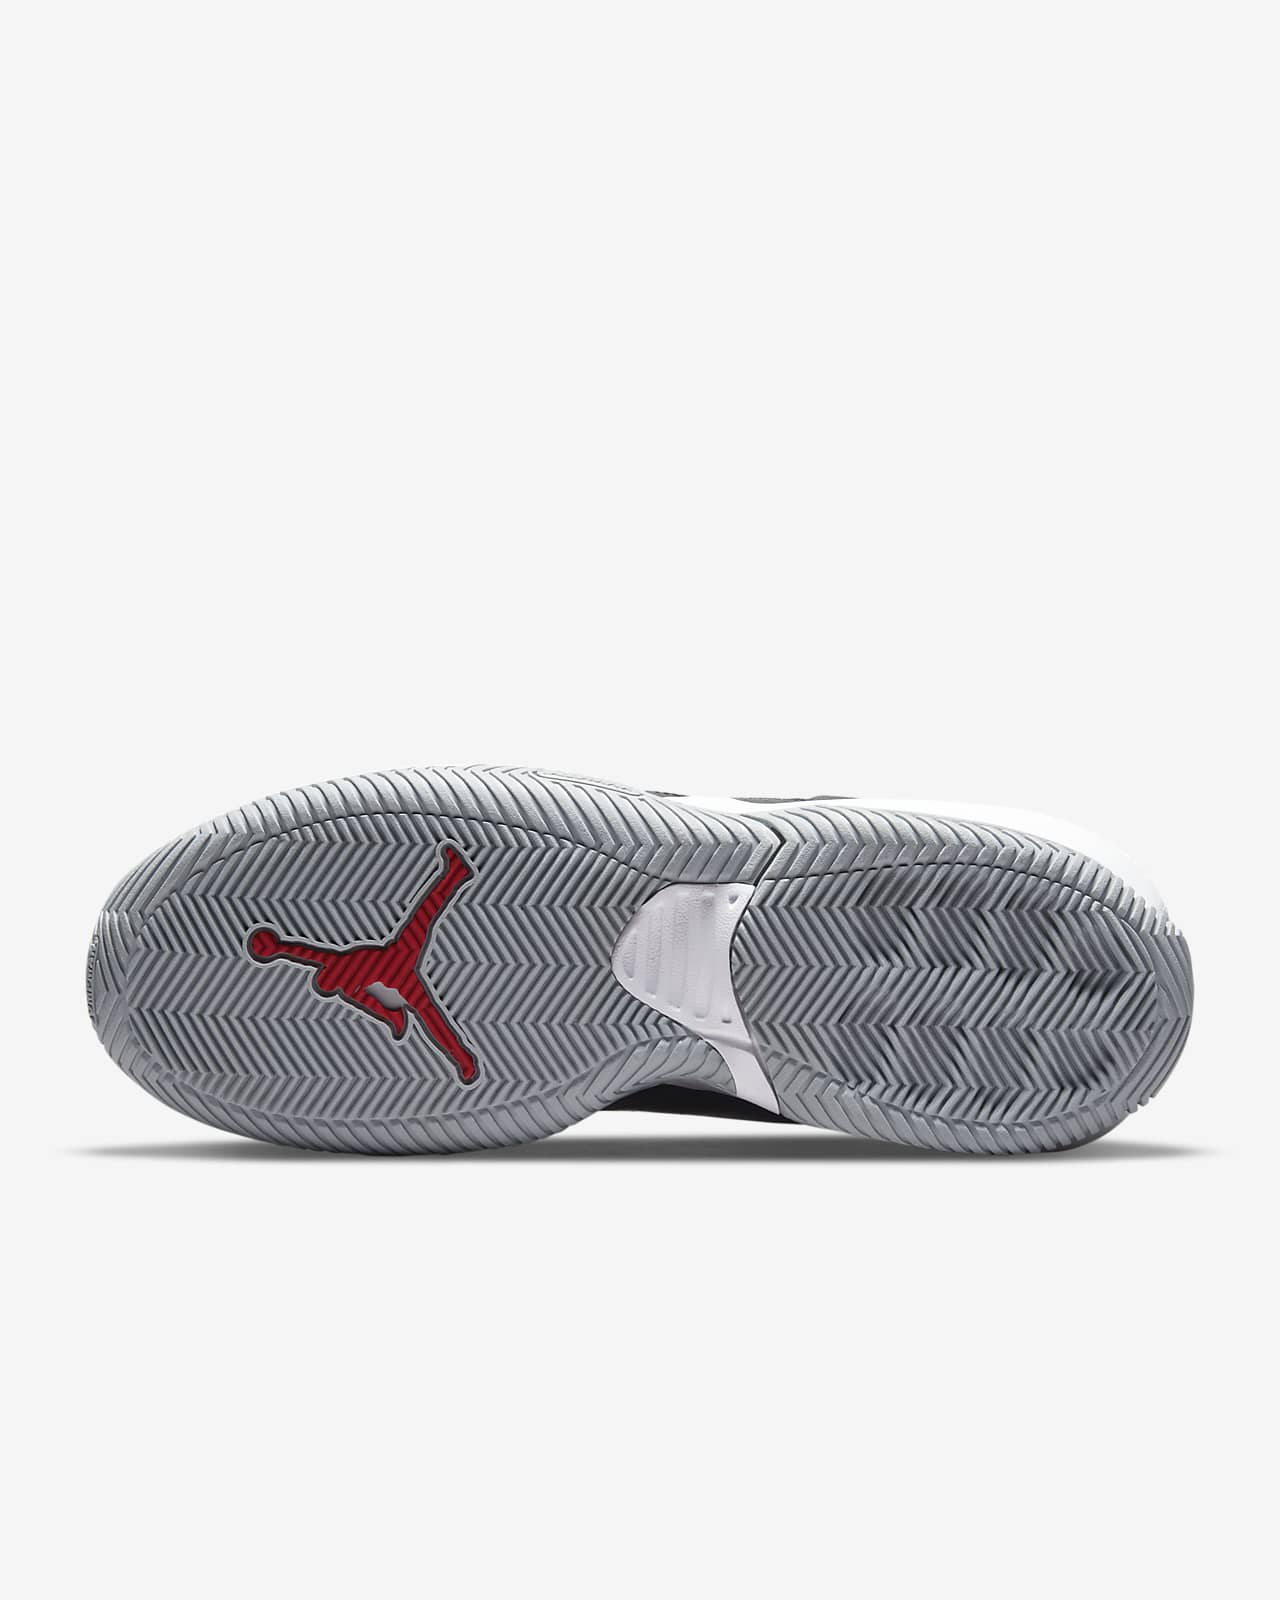 Jordan Stay Loyal Shoes